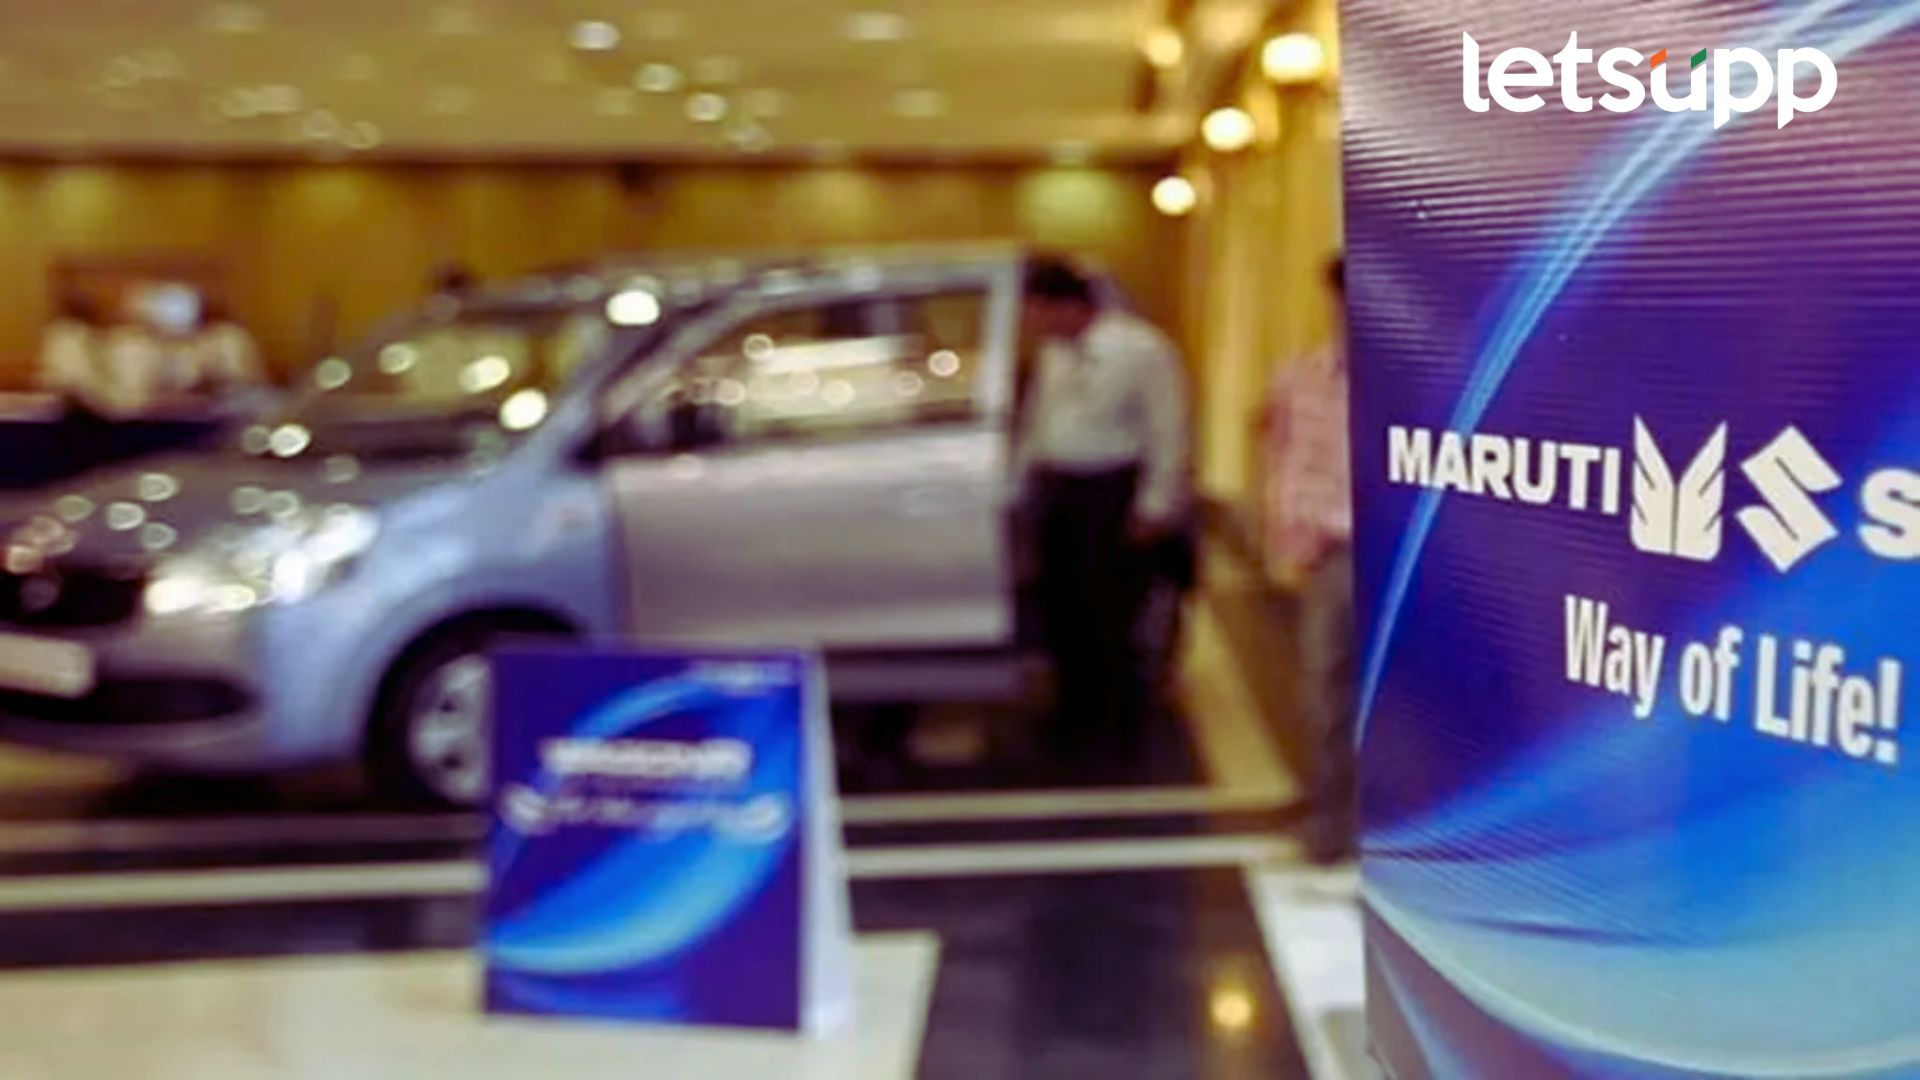 Maruti Suzuki Q2 Result: सुझुकी कंपनीच्या शेअर्समध्ये तेजी; नफ्यात 80 तर महसुलात 24 टक्के वाढ